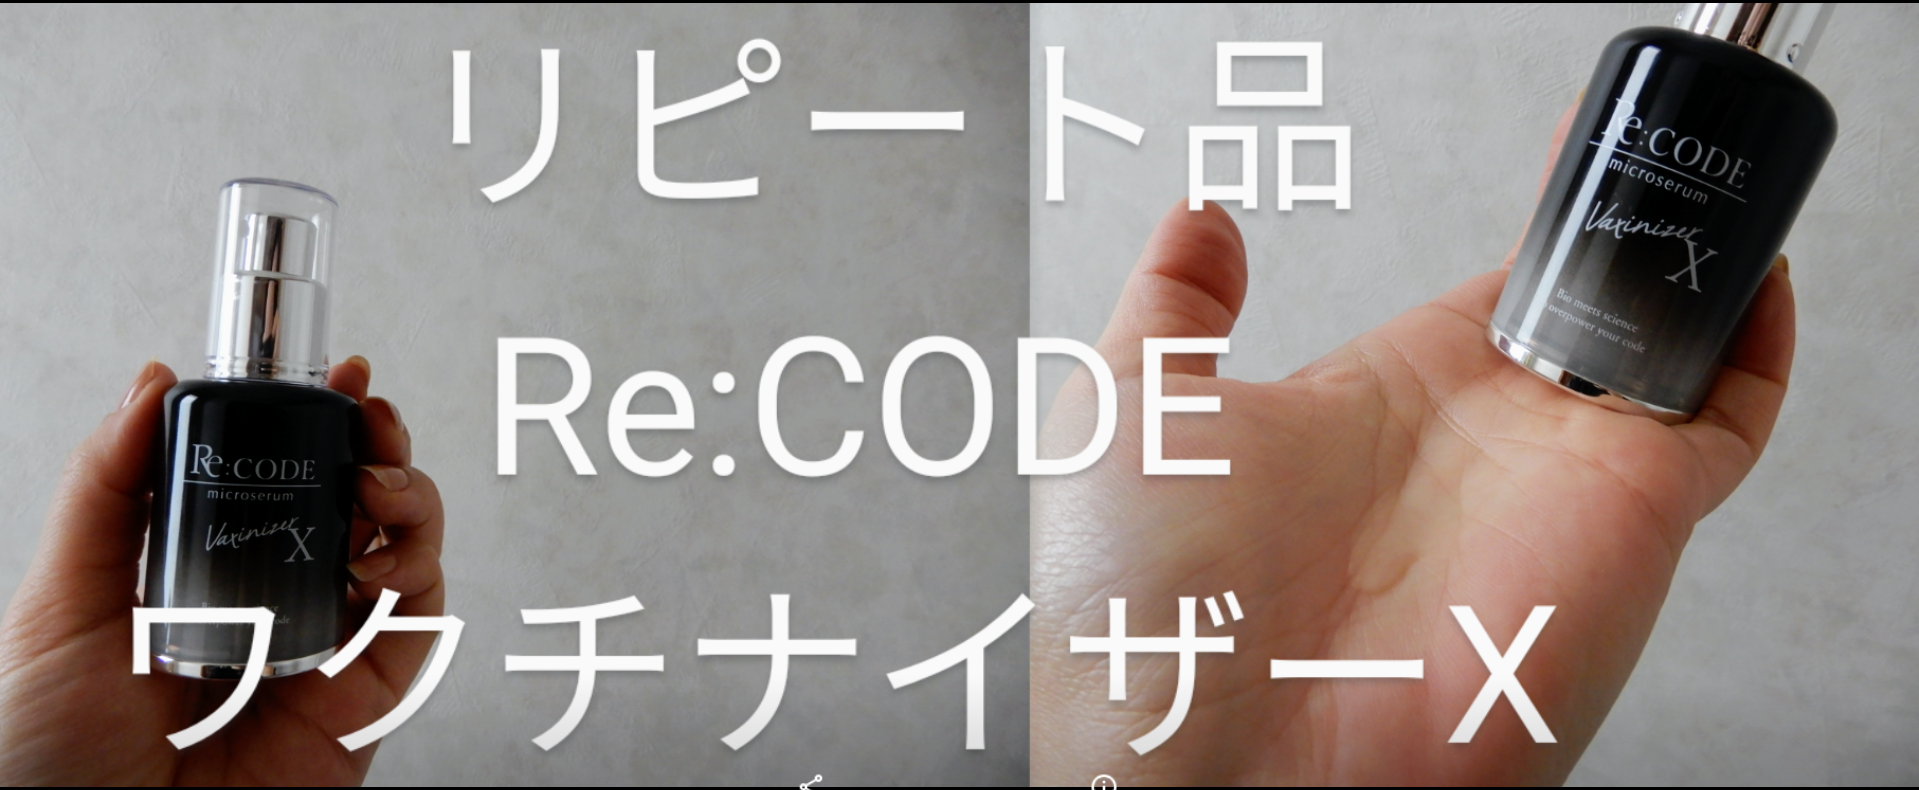 日本販売 リコード マイクロセラム Re:CODE ワクチナイザーX 30ml